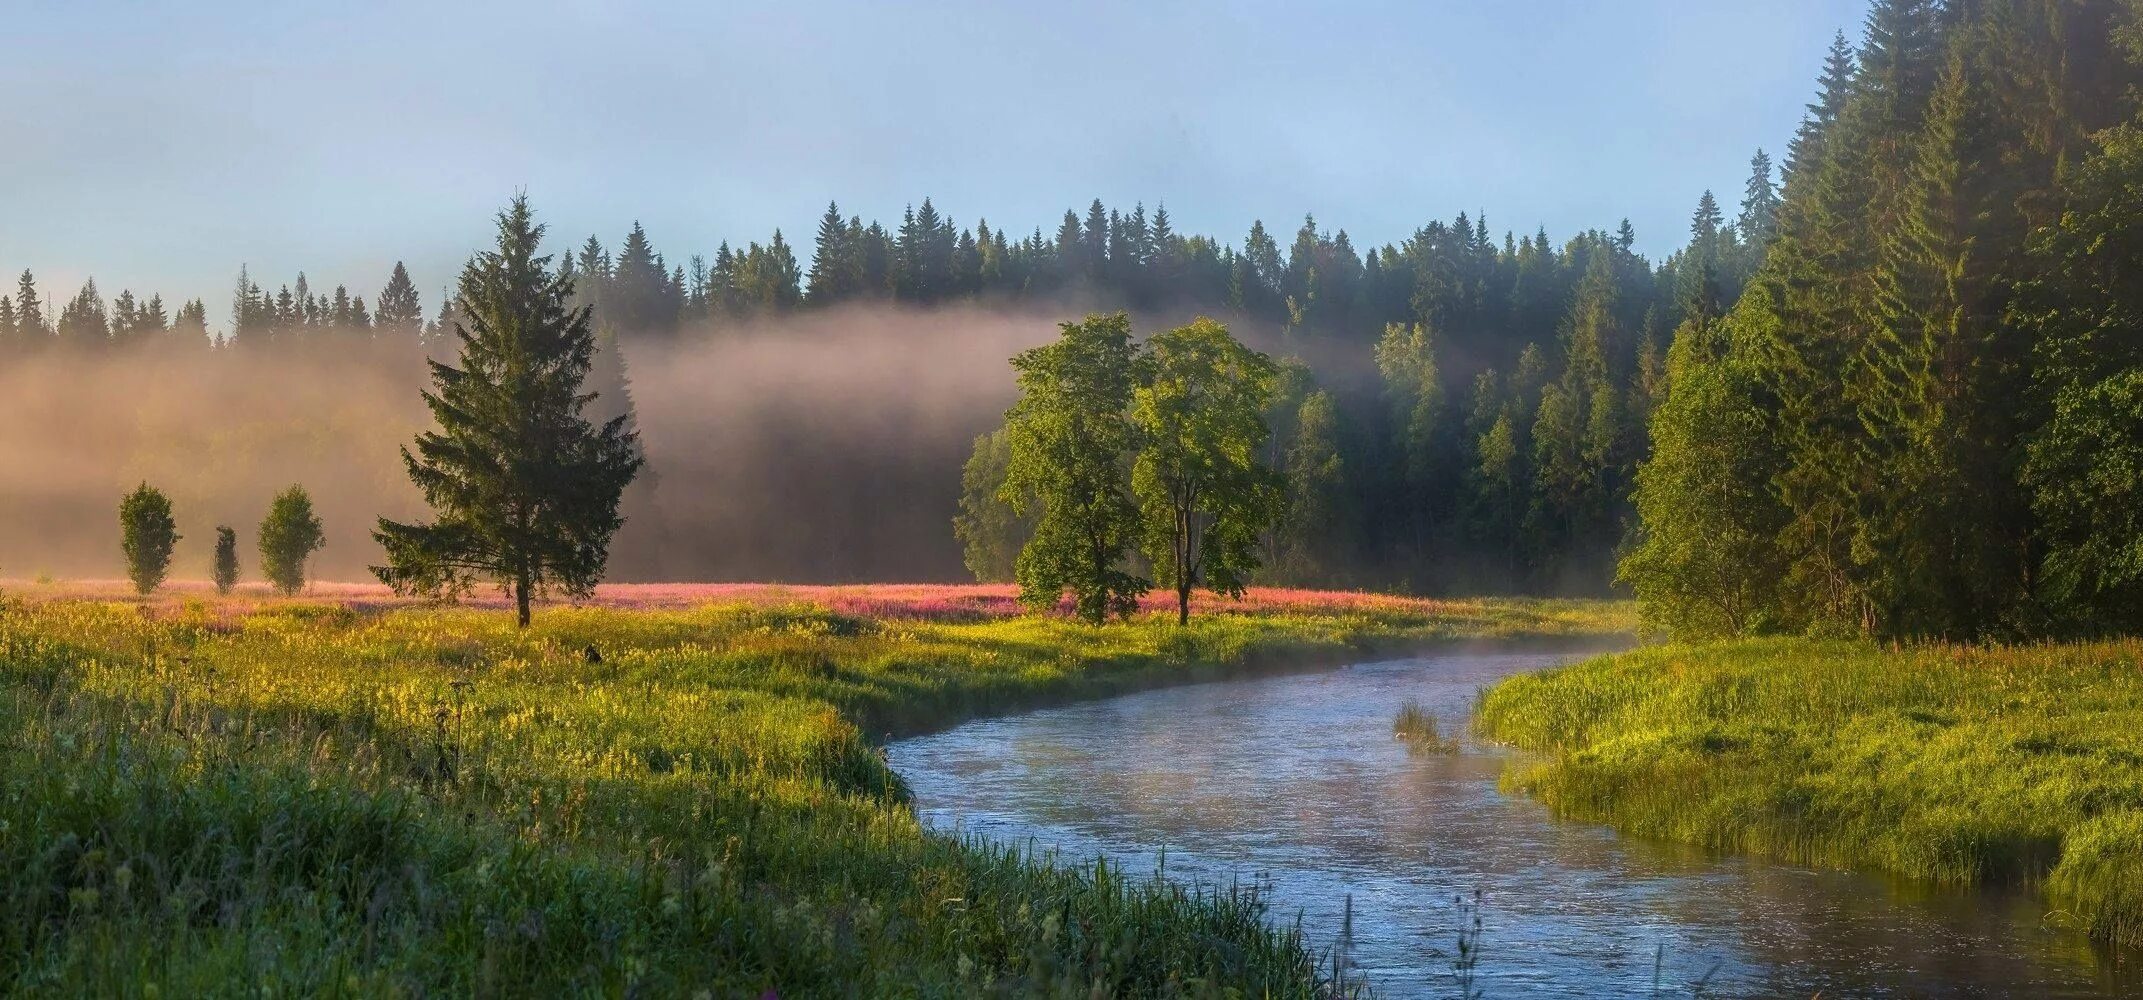 Лужский район лето лес. Фёдор Лашков фотограф река. Луга залитые водой